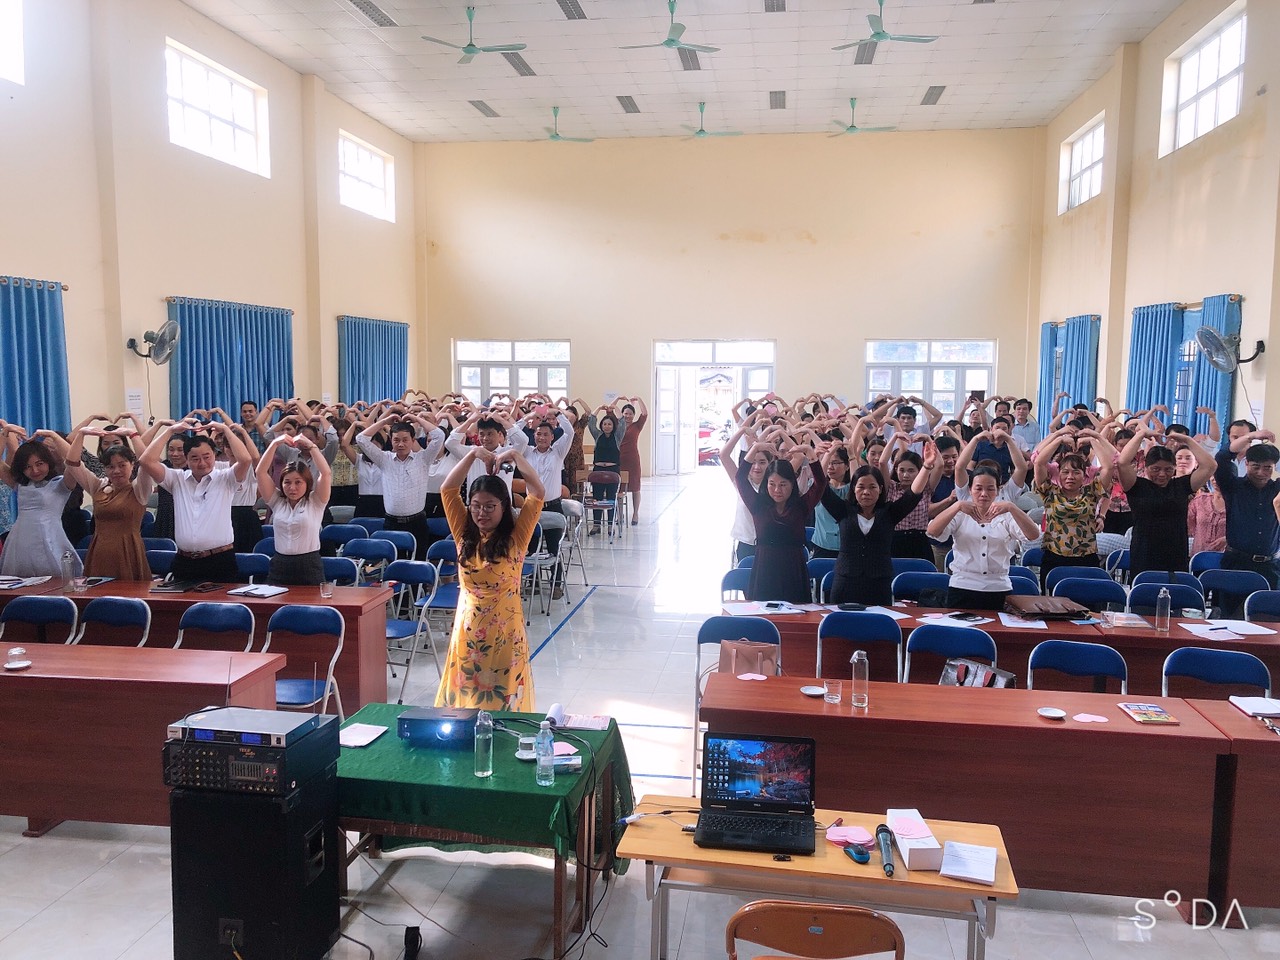  Các thầy cô huyện Kim Bôi rất hào hứng trong tiết học kĩ năng sống